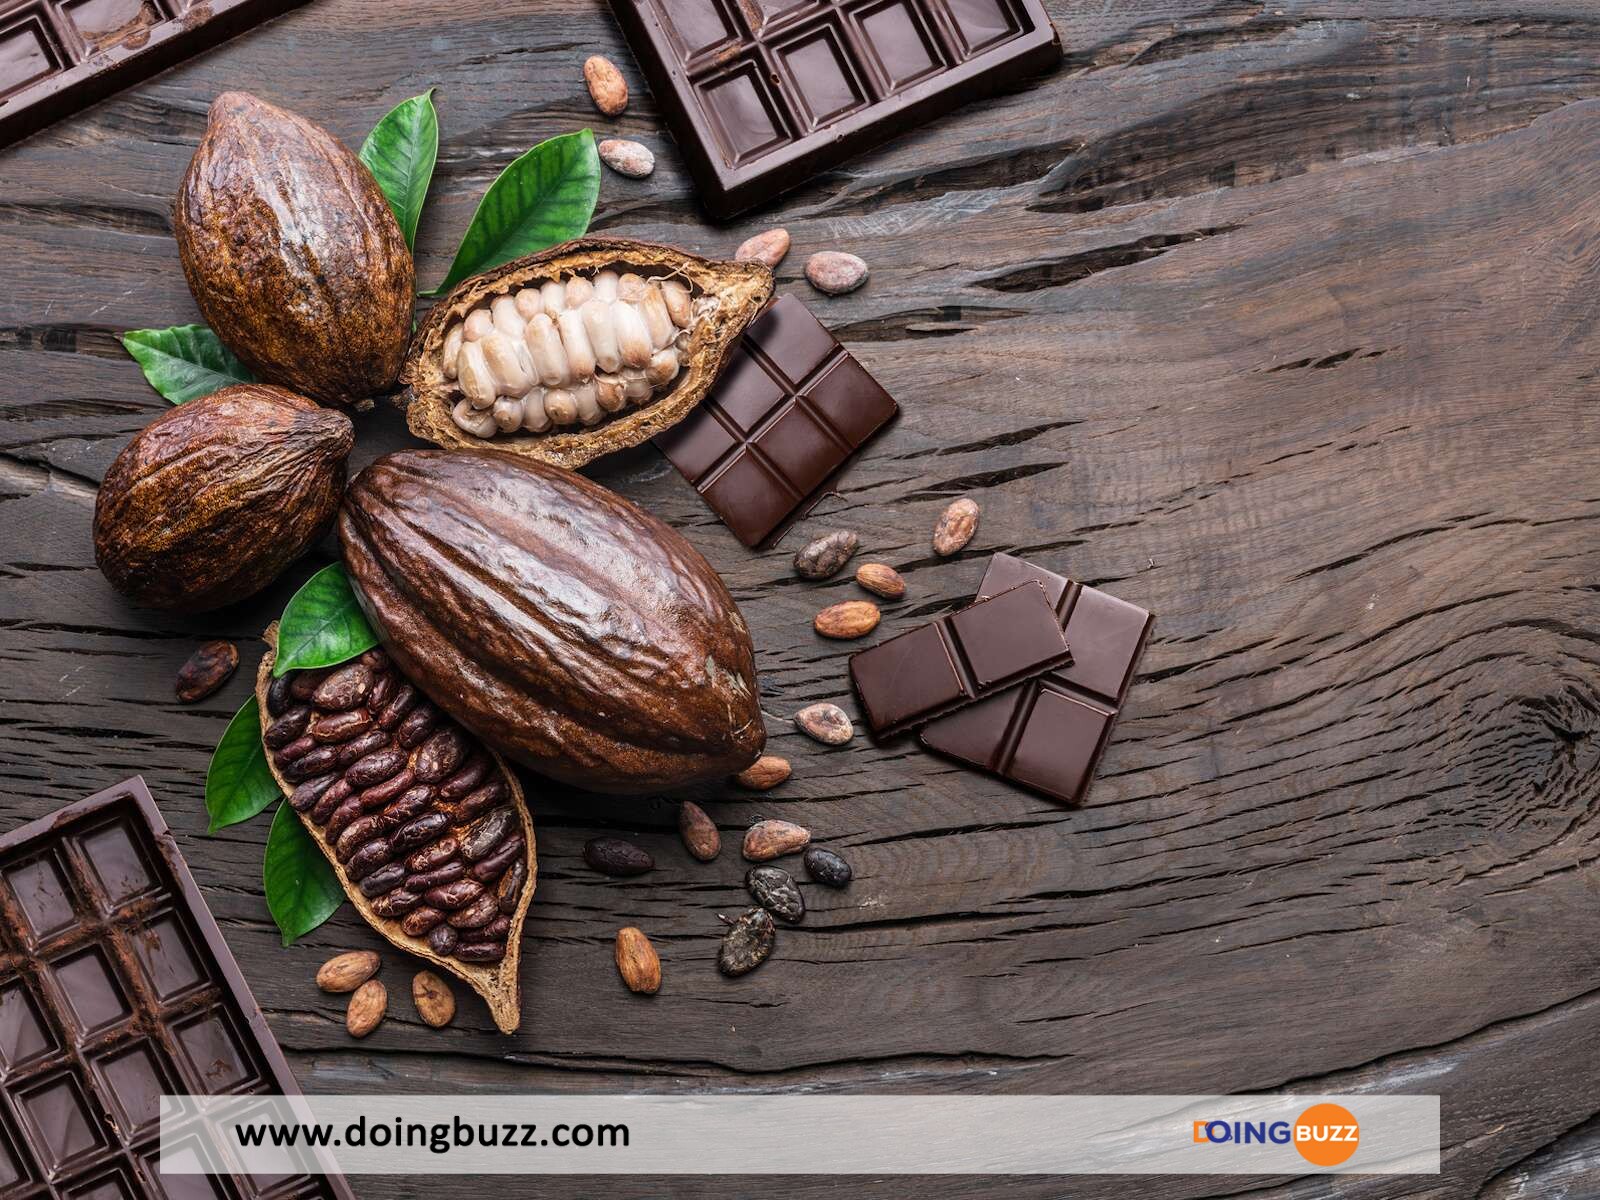 Pourquoi Les Producteurs De Cacao Camerounais Gagnent Trois Fois Plus Que Ceux De Côte D'Ivoire?